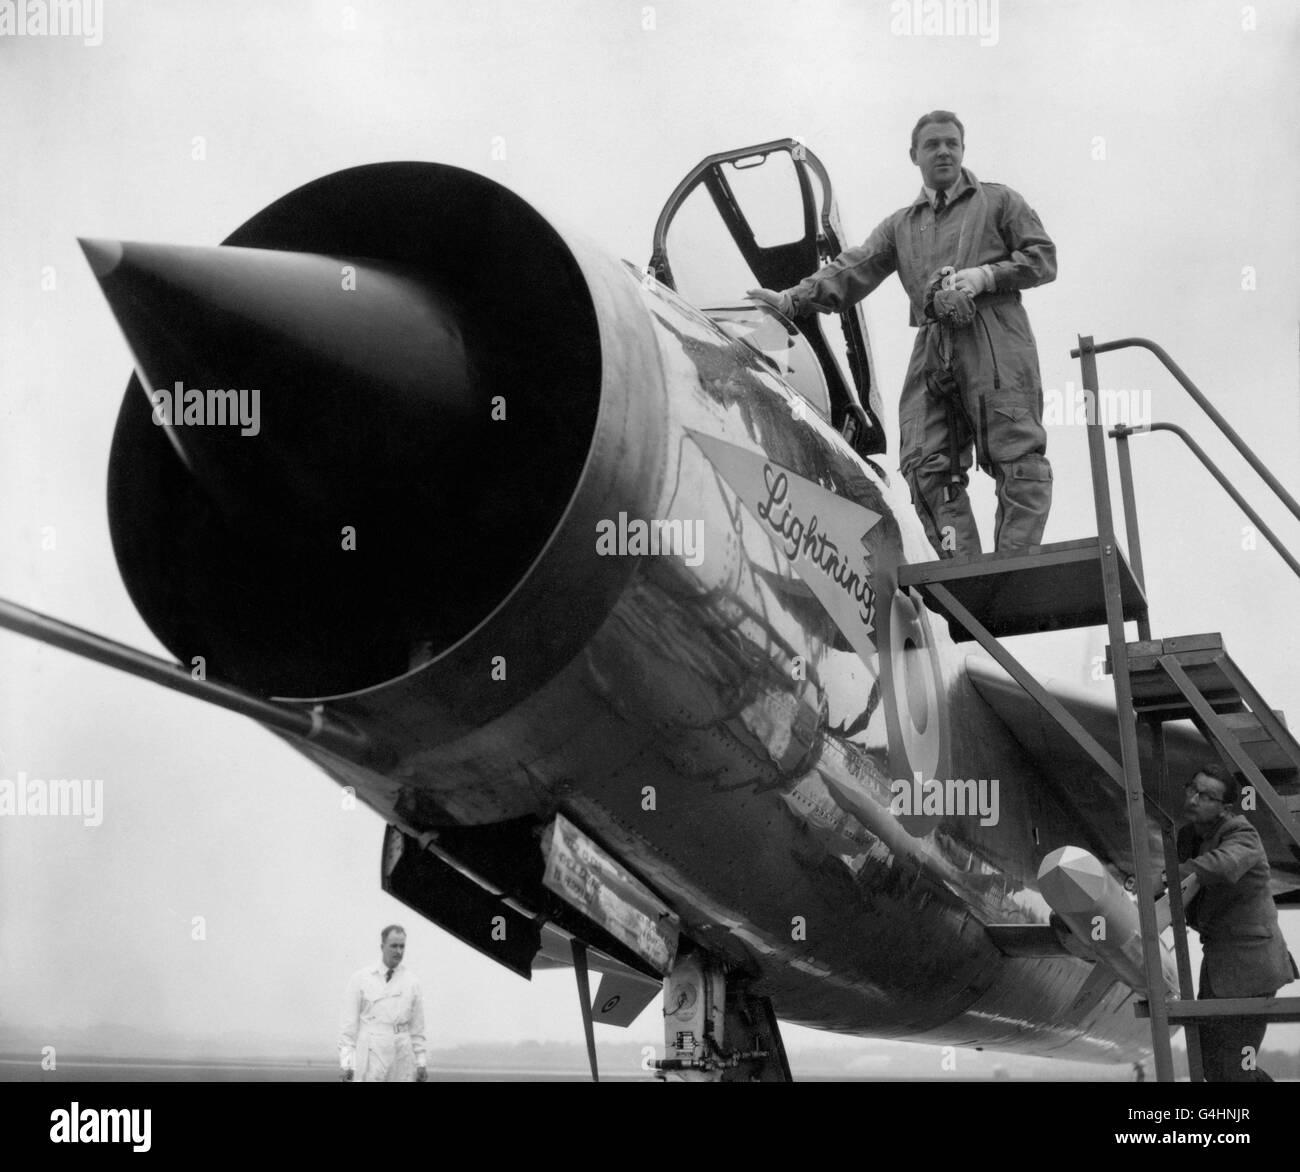 Le « Lightning » d'English Electric, le premier combattant entièrement supersonique de la RAF, a été officiellement nommé lors d'une cérémonie à l'aérodrome de l'établissement Royal Aircraft à Farnborough, Hants, aujourd'hui, lorsque le chef d'état-major de l'aviation, le maréchal de la RAF, Sir Dermot Boyle, brisa une bouteille de champagne au-dessus du nez de l'avion. Expositions de photos : le pilote d'essai en chef Roland Beaumont photographié après la cérémonie de baptême. Banque D'Images